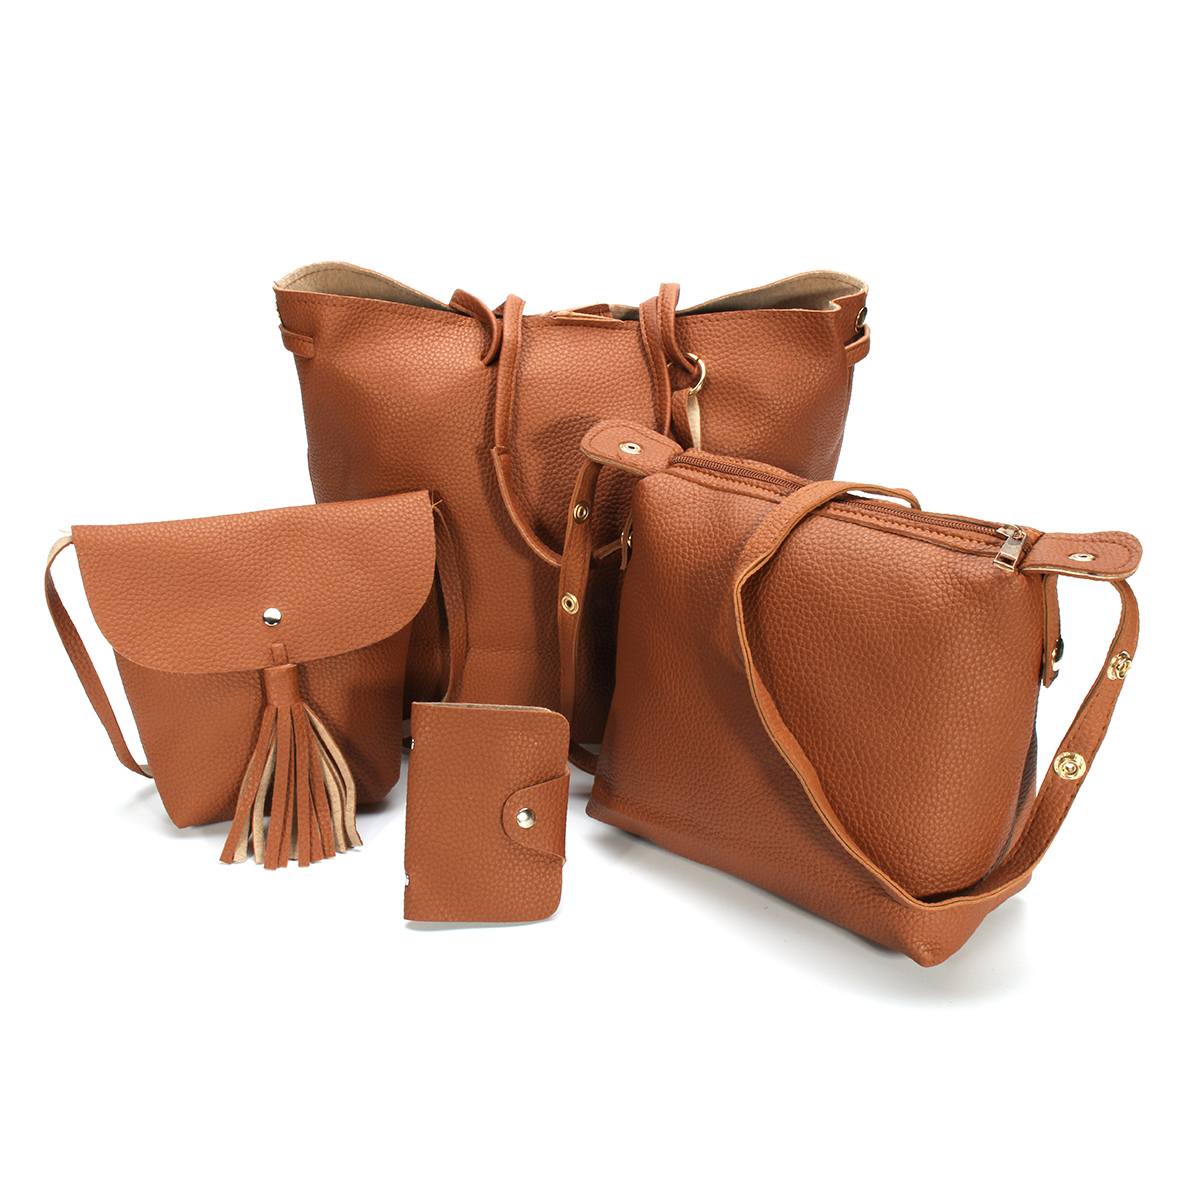 4Pcs//set Women Handbag Messenger Faux Leather Shoulder Bag Tote Purse Satchel